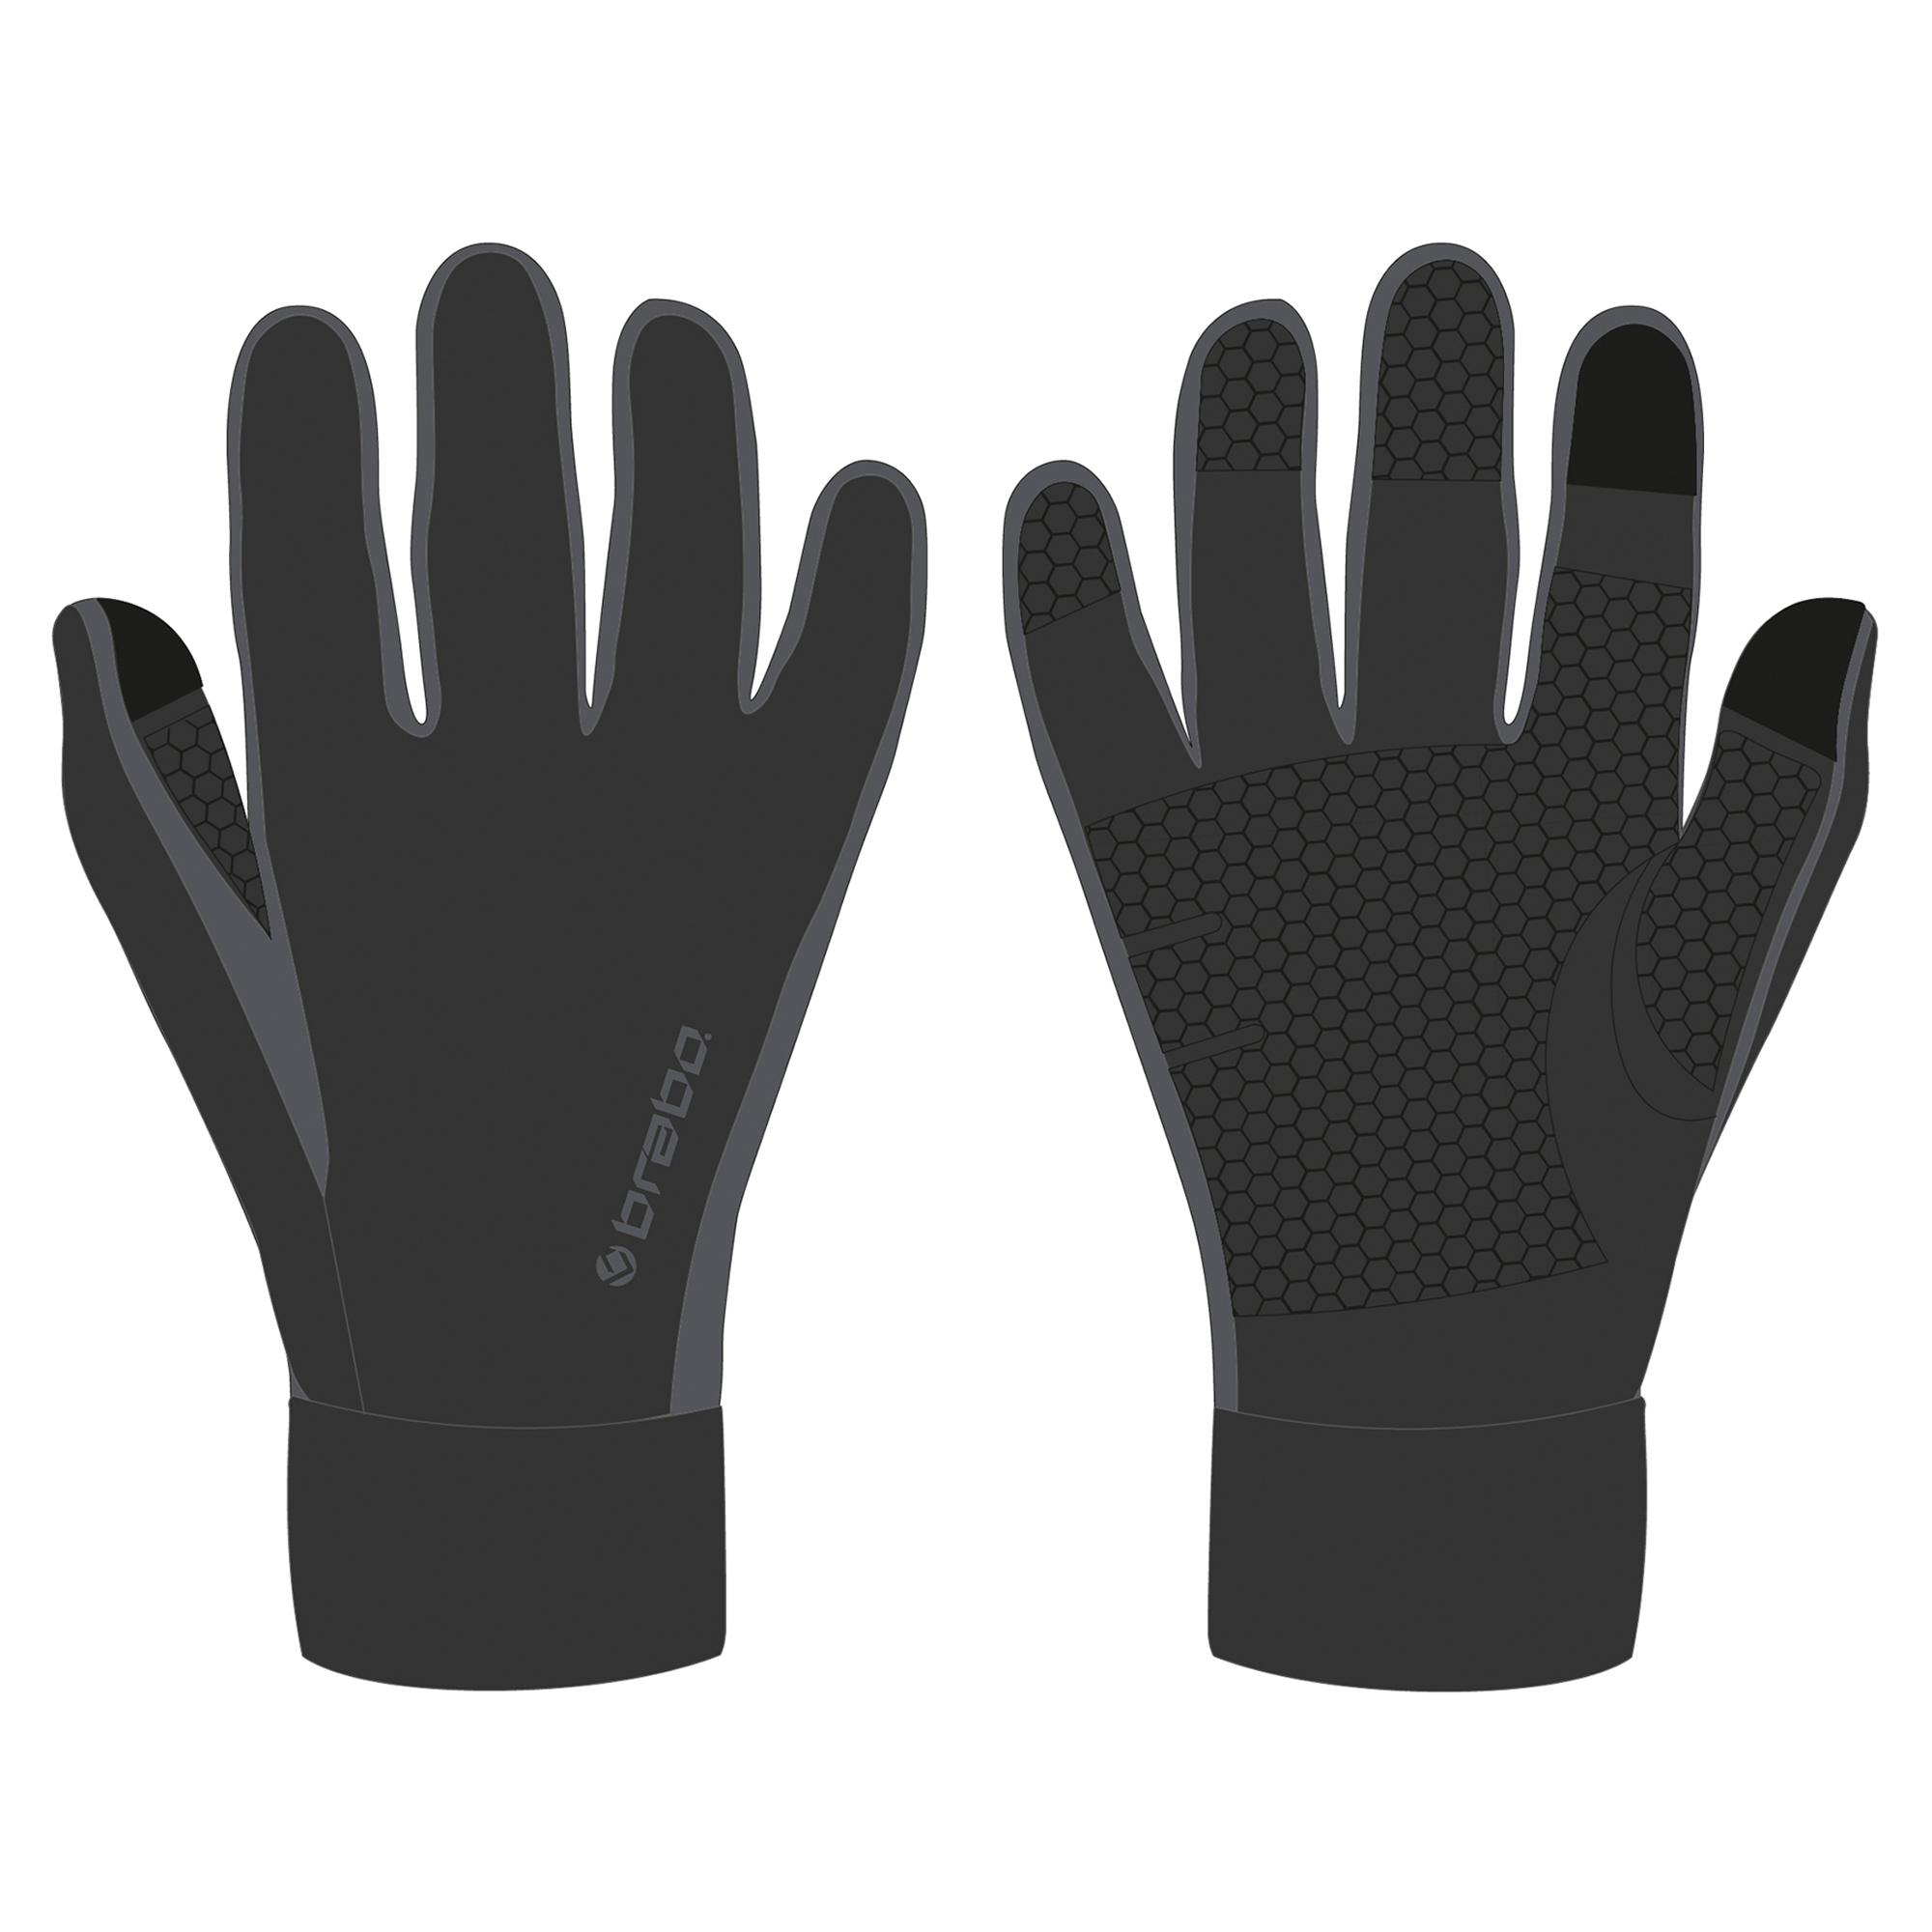 Tech gloves